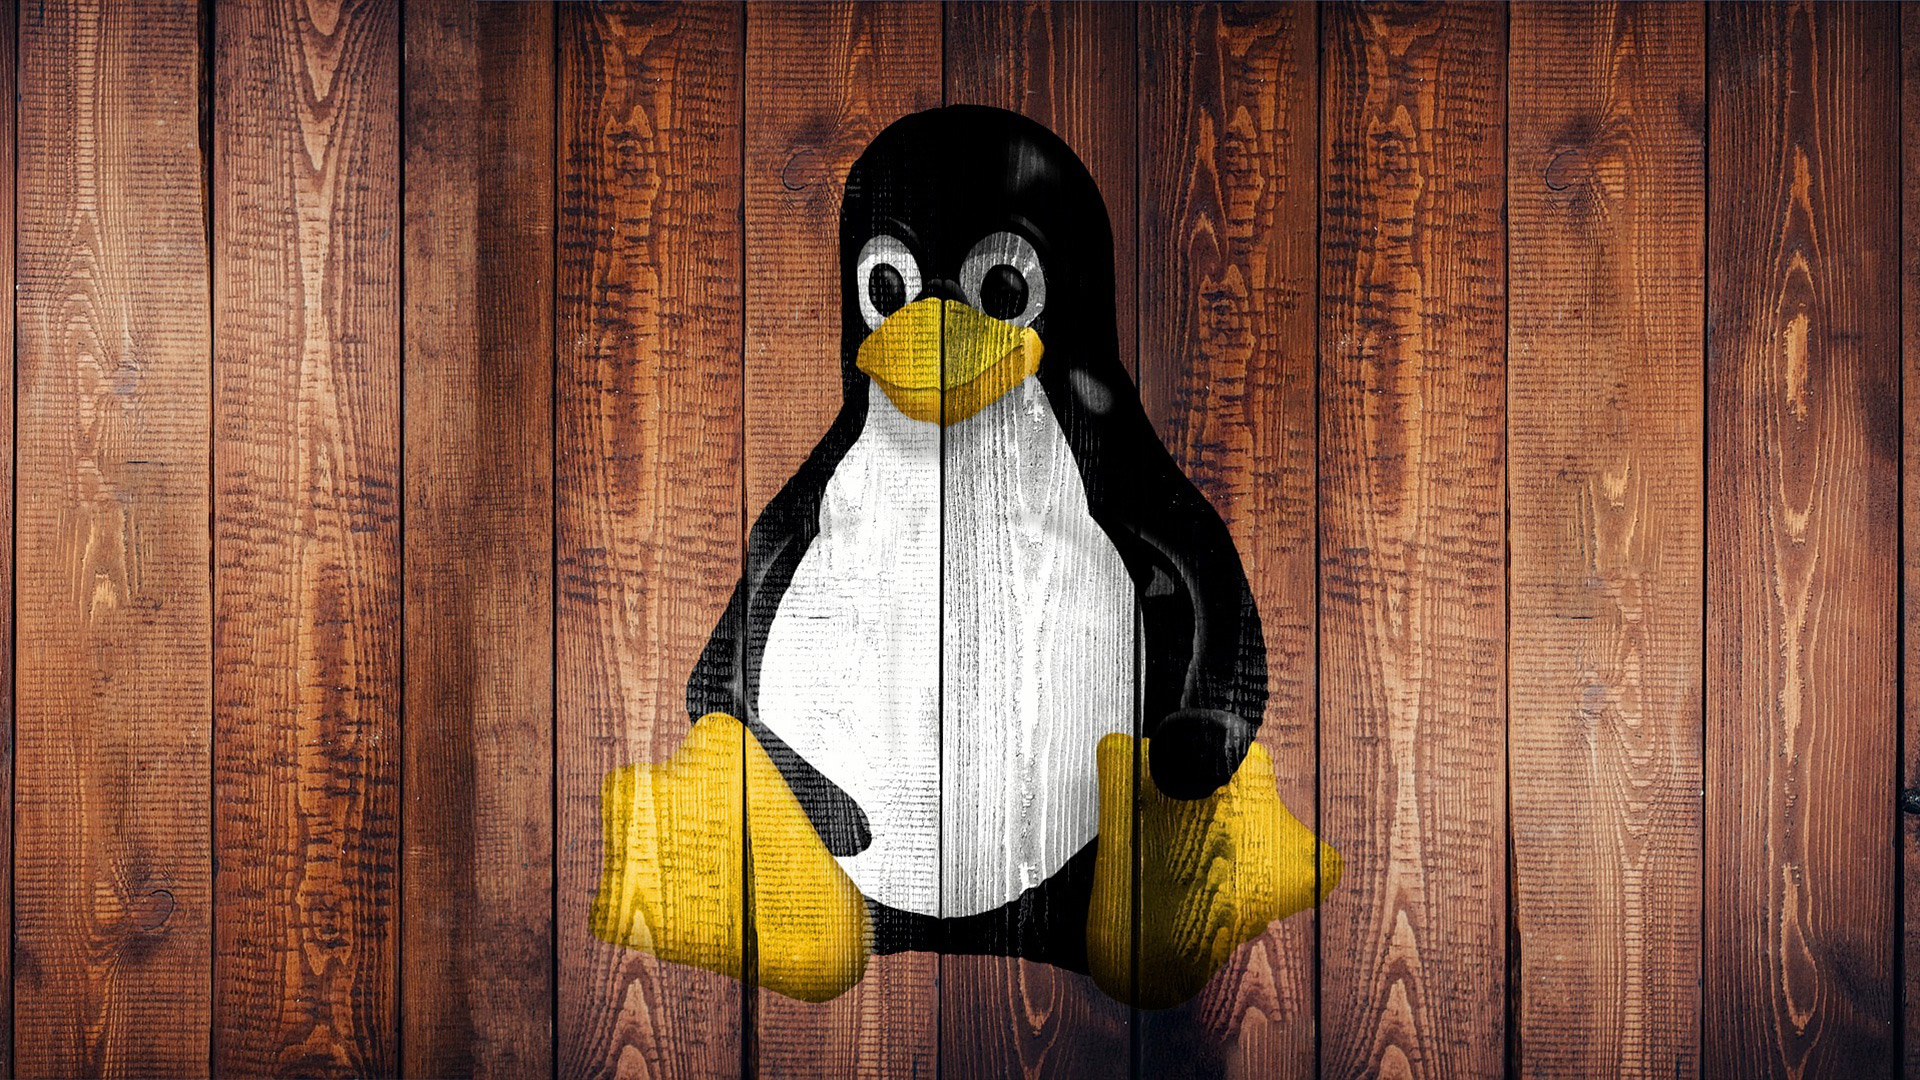 Linux mere end fordobler sin markedsandel på 10 år